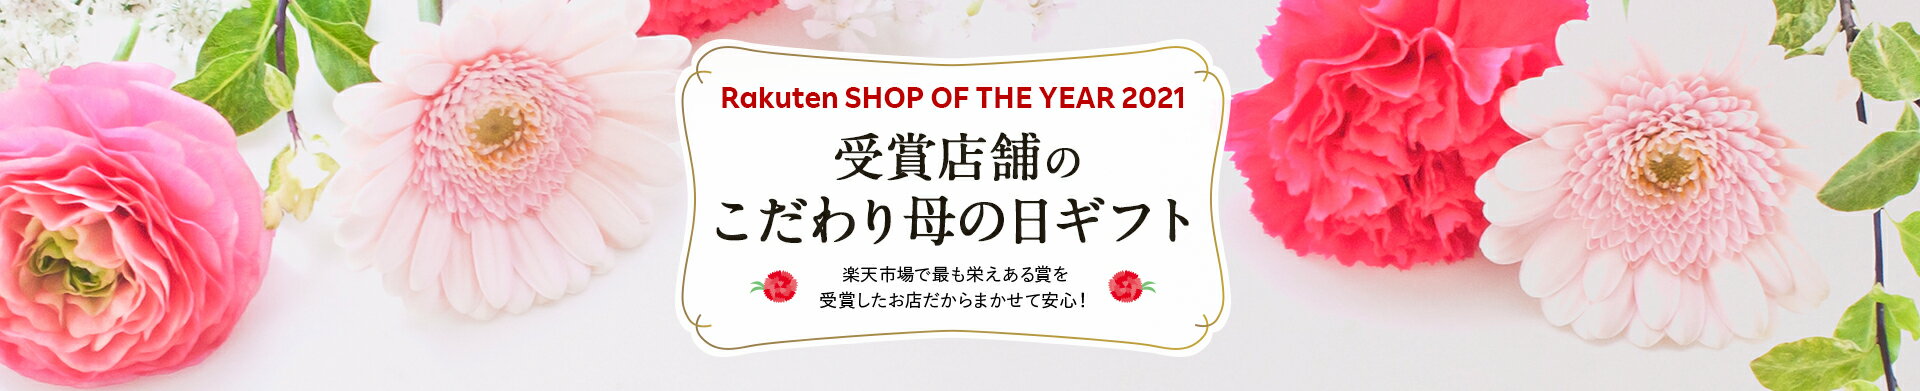 楽天ショップ・オブ・ザ・イヤー2021受賞店舗の母の日ギフト